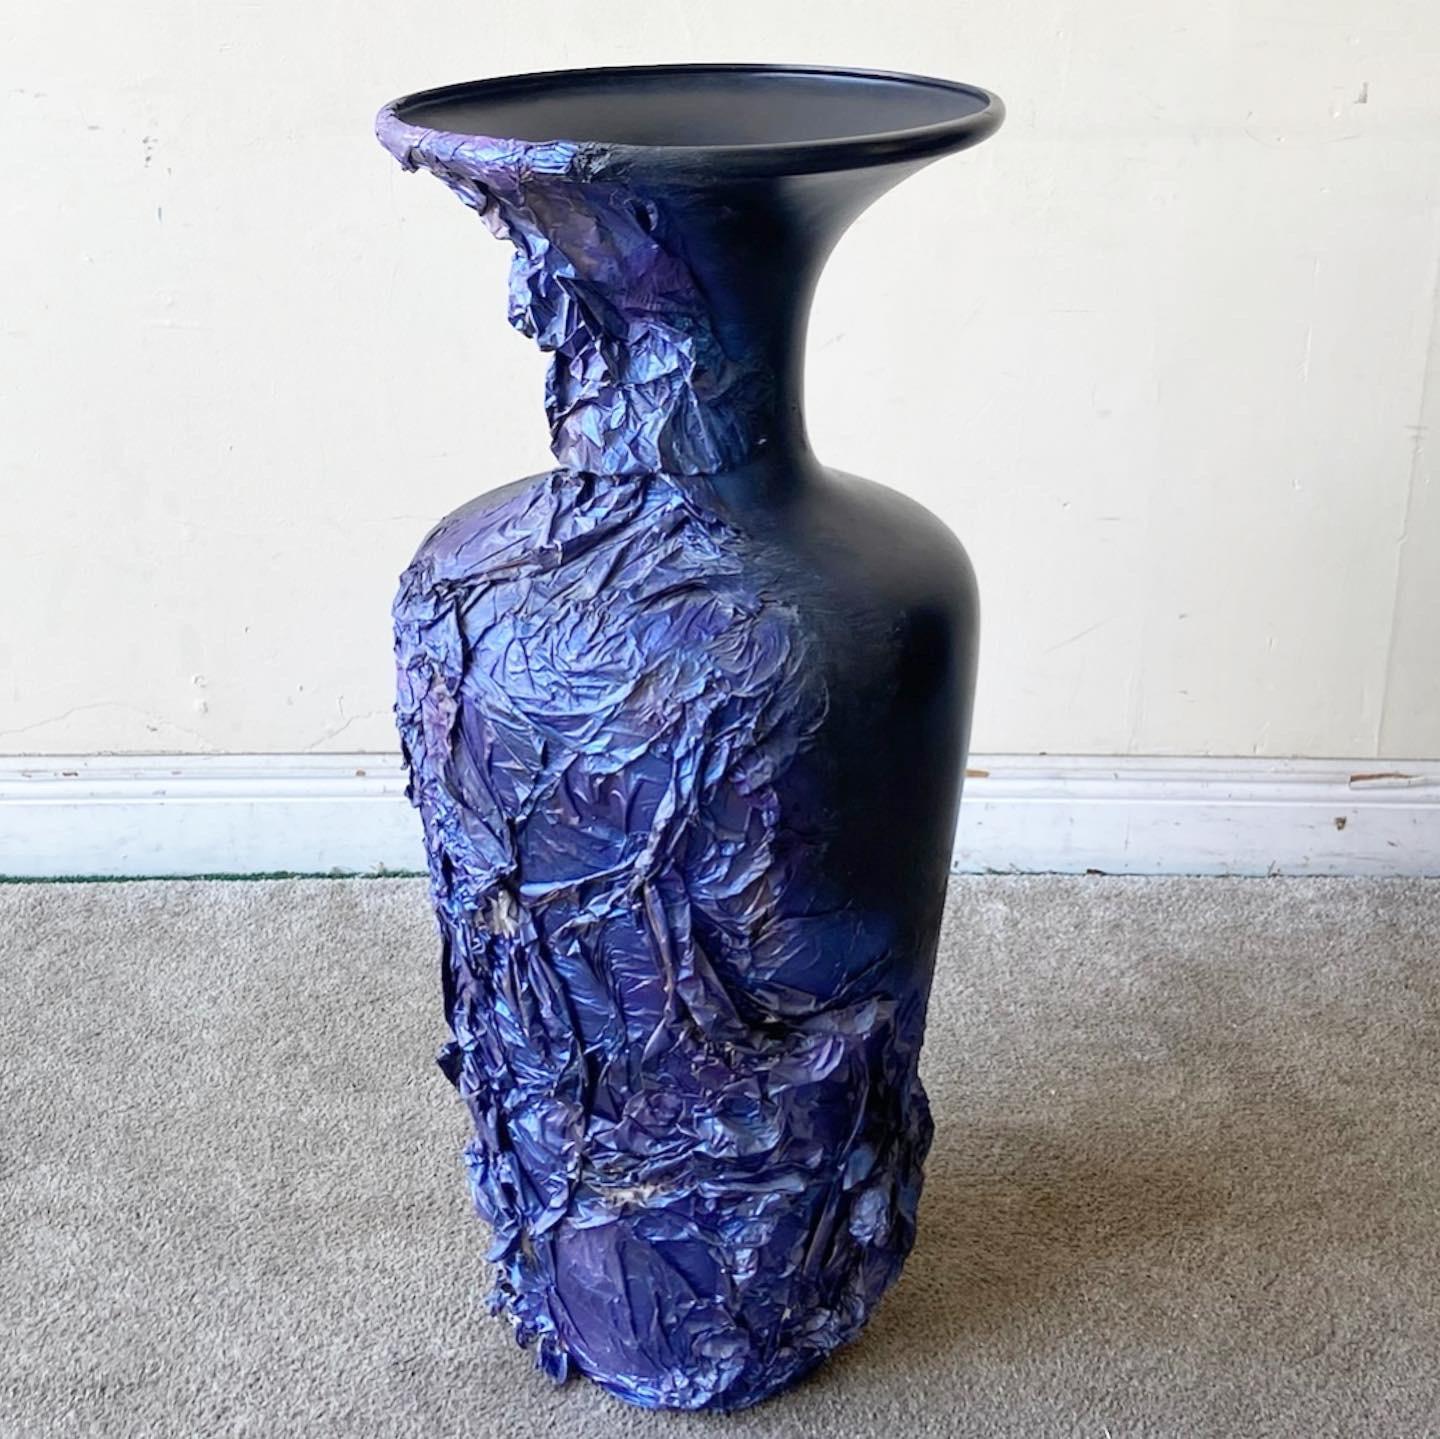 Exceptionnel vase de sol postmoderne. Finition noire avec un papier mâché bleu et violet sur le côté.
